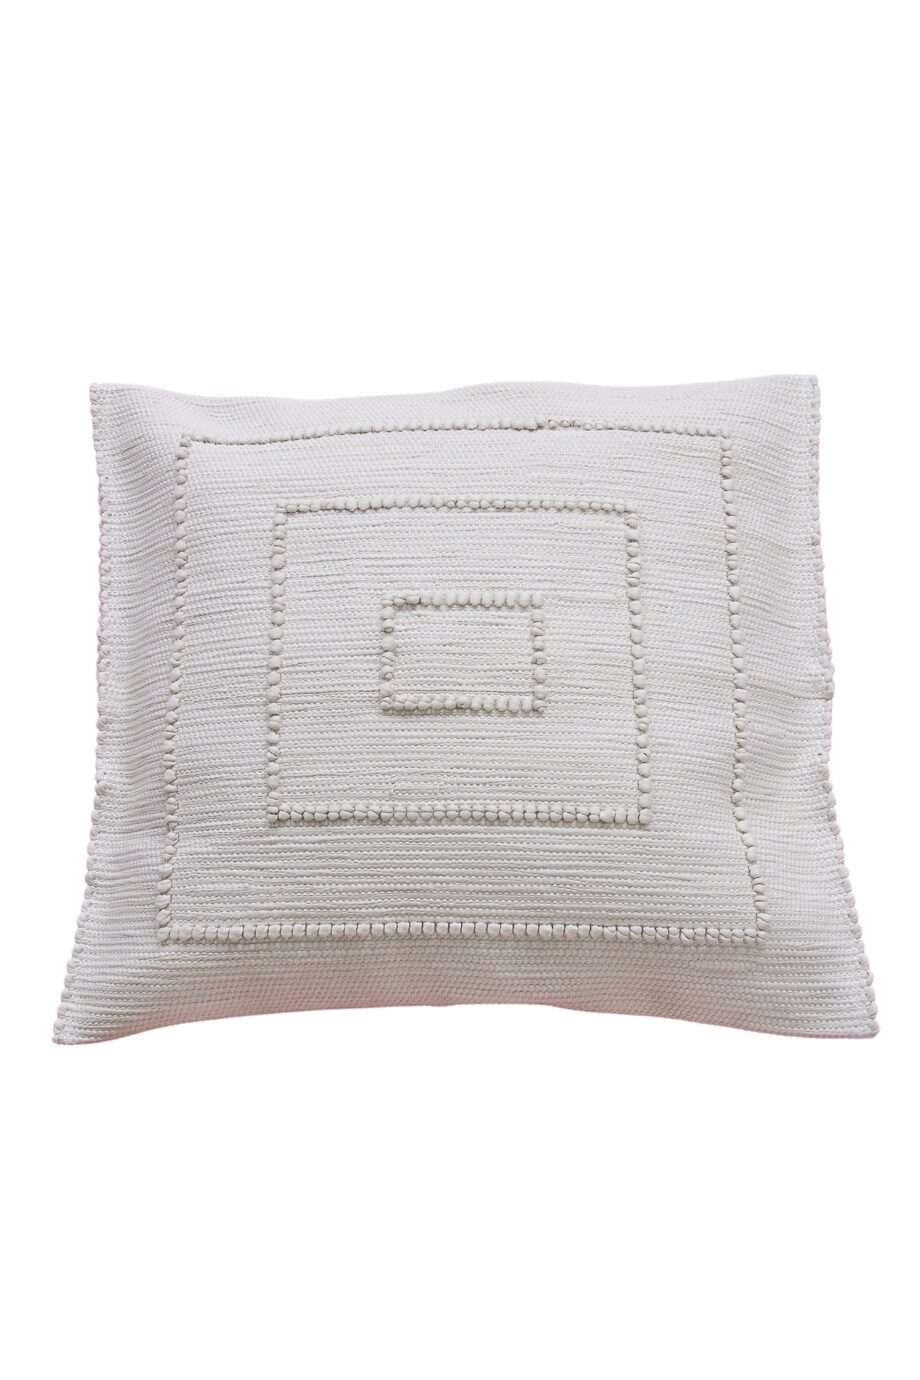 quadro linen woven cotton pillowcase medium